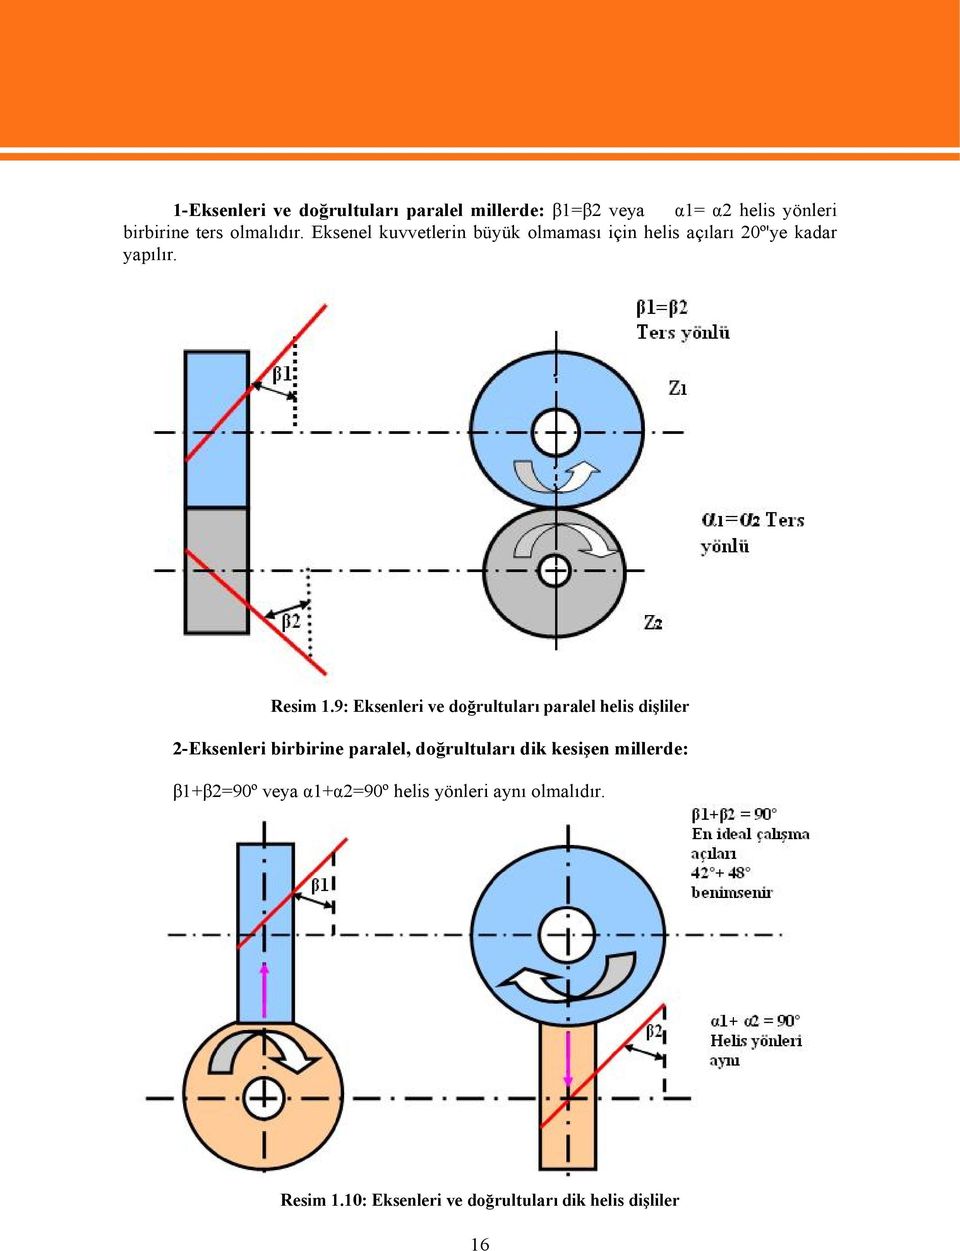 9: Eksenleri ve doğrultuları paralel helis dişliler 2-Eksenleri birbirine paralel, doğrultuları dik